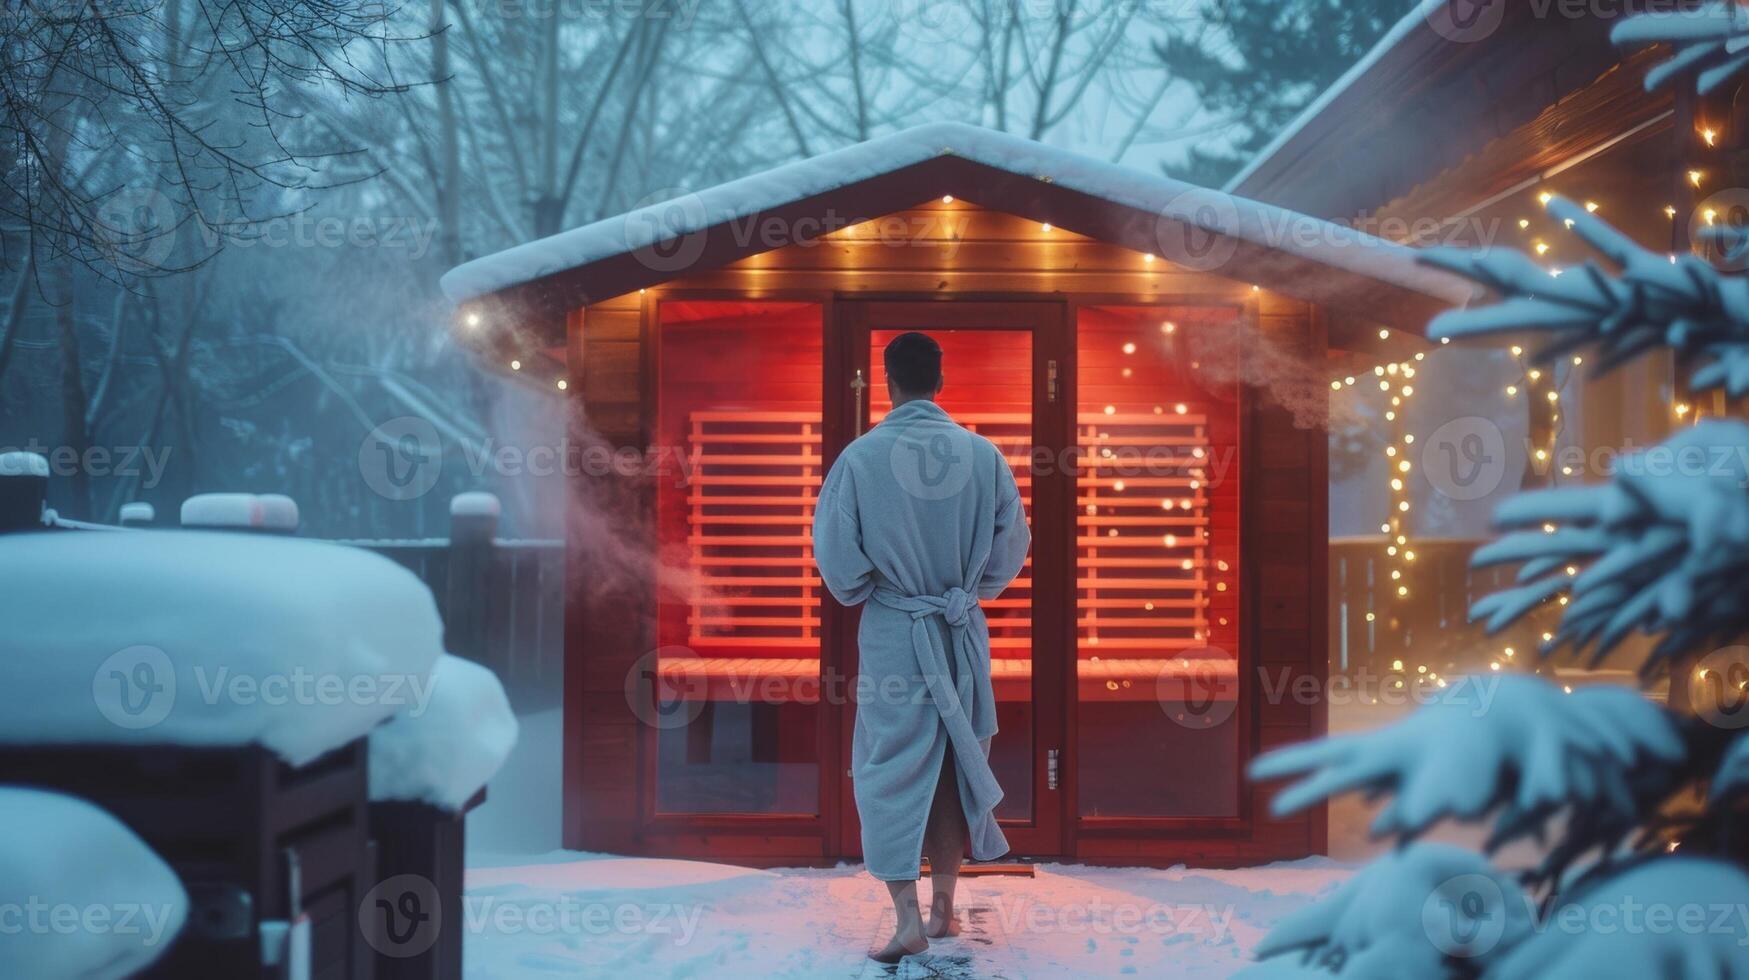 ein Person eingewickelt im ein gemütlich Kleid Schritt aus von ihr Infrarot Sauna und Atmung im das knackig erfrischend Winter Luft. das Kontrast von das heiß Sauna und kalt Luft fügt hinzu zu das belebend foto